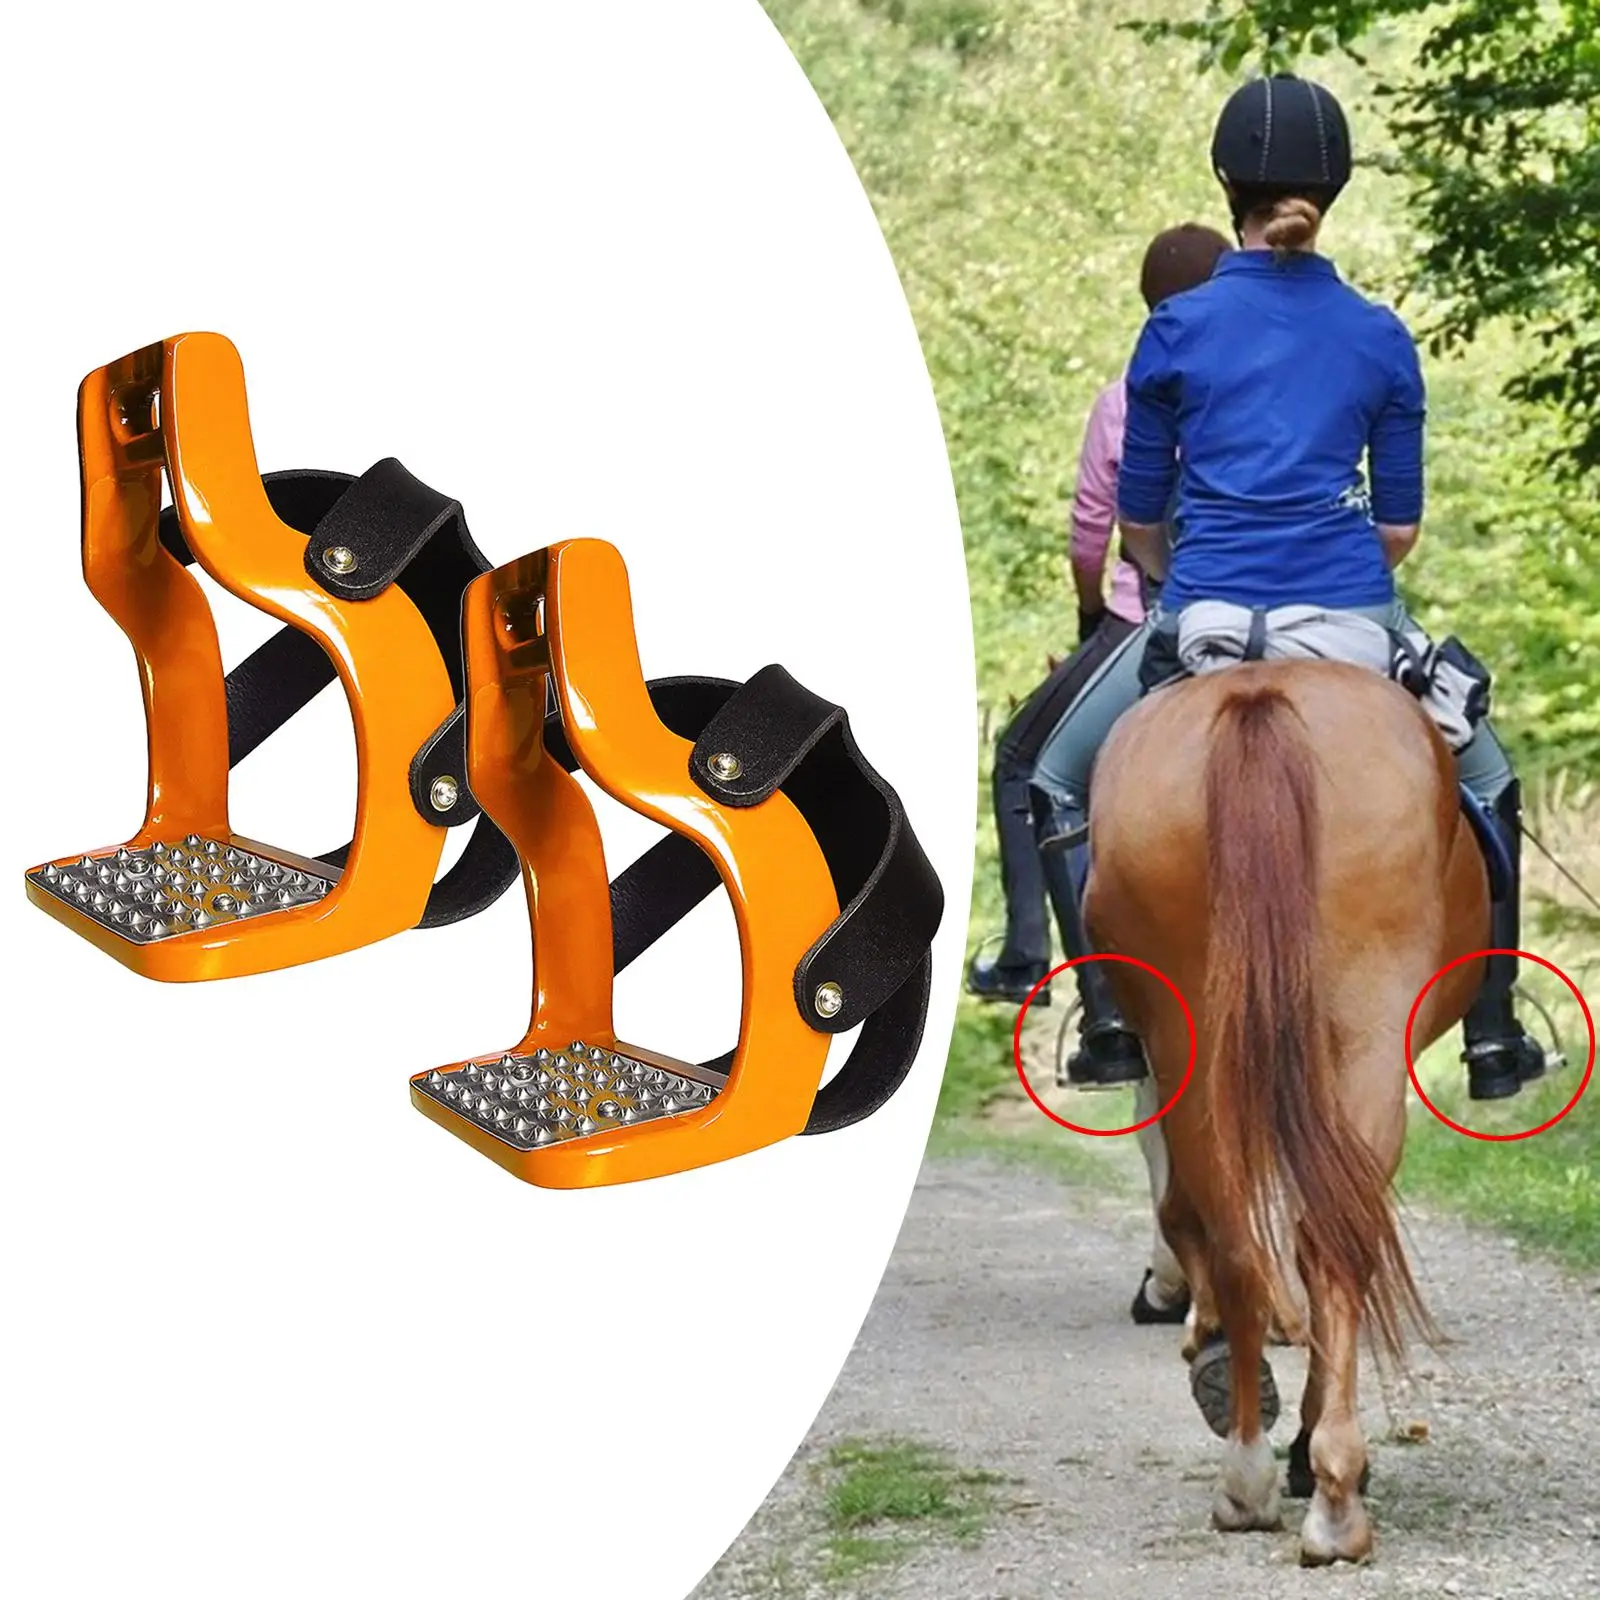  Premium  Saddle Lightweight Safety Horse Saddle Riding  Hand-Polished Horse Die-Cast Aluminum 